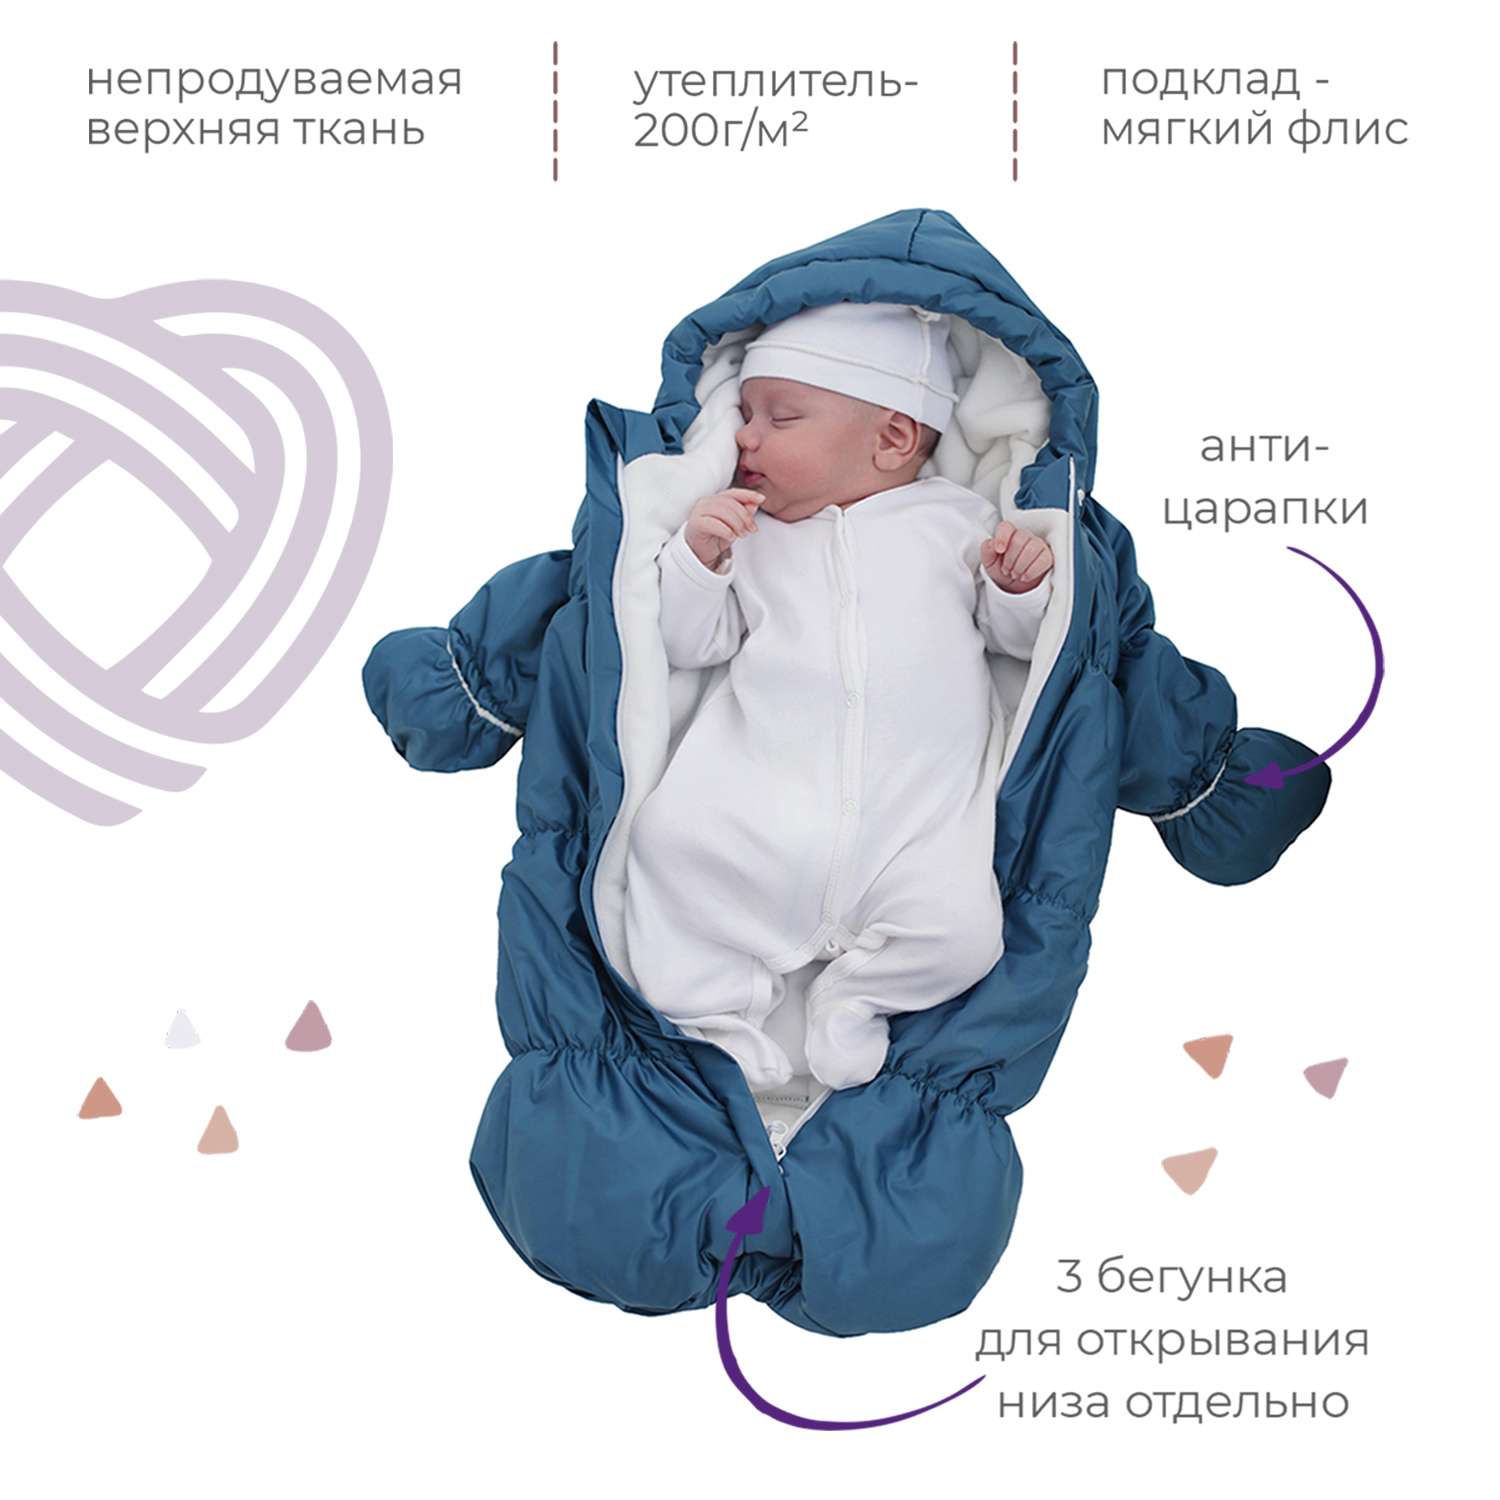 Конверт для новорожденного inlovery на выписку/в коляску «Маршмеллоу» синий - фото 2